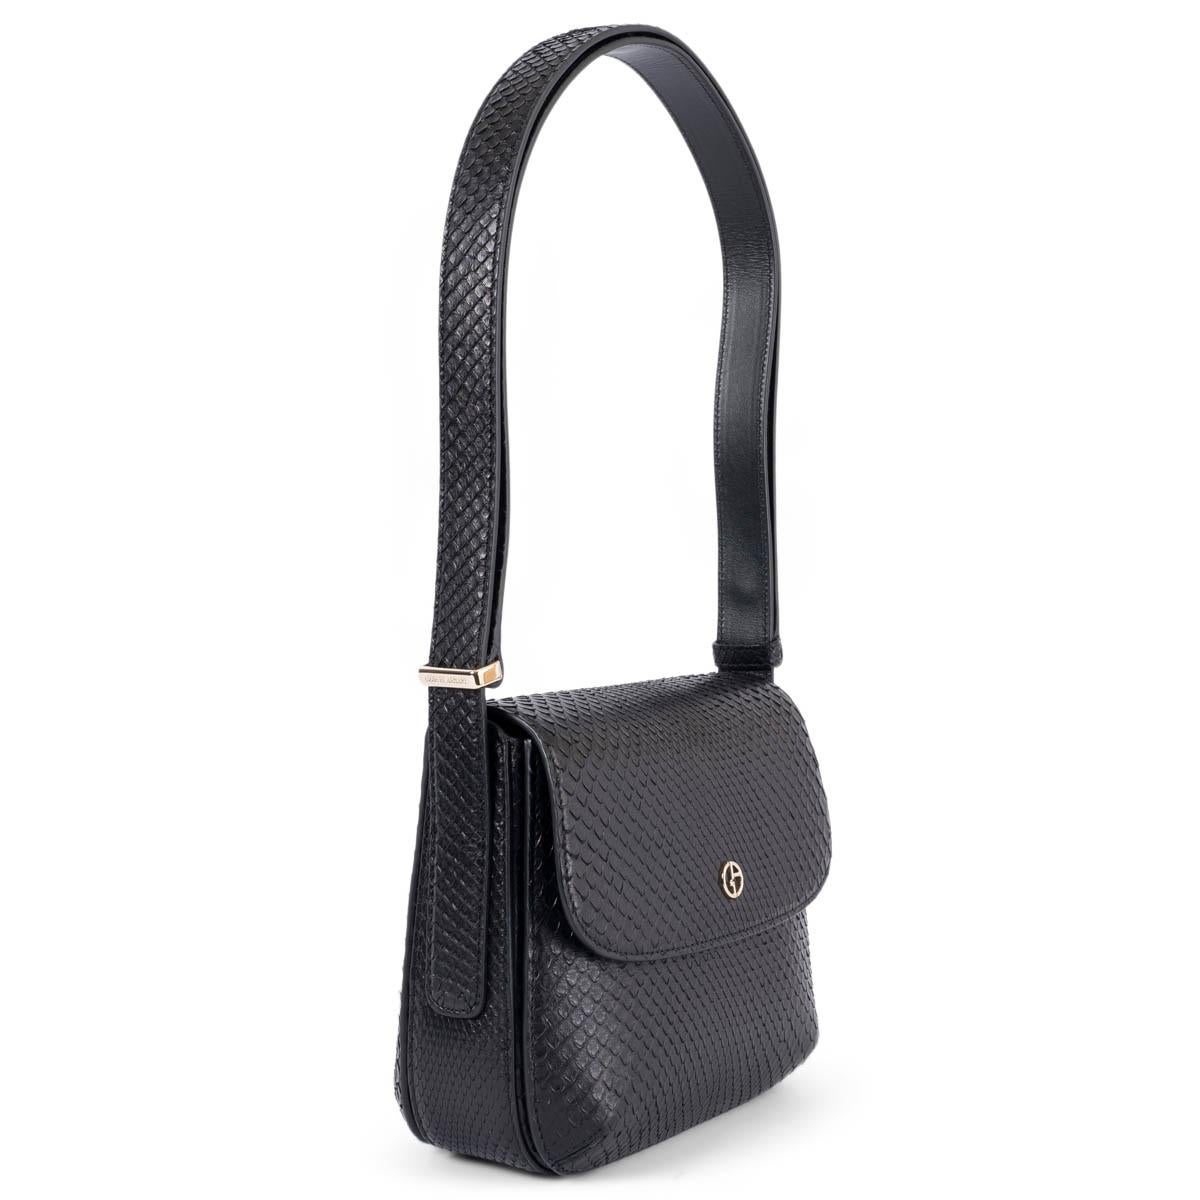 100% authentique Giorgio Armani La Prima, petit sac à bandoulière en peau de serpent noir avec des accessoires en or clair. Il s'ouvre à l'aide d'un bouton magnétique dissimulé sous le rabat et est doublé en daim nude. Il comporte une poche ouverte